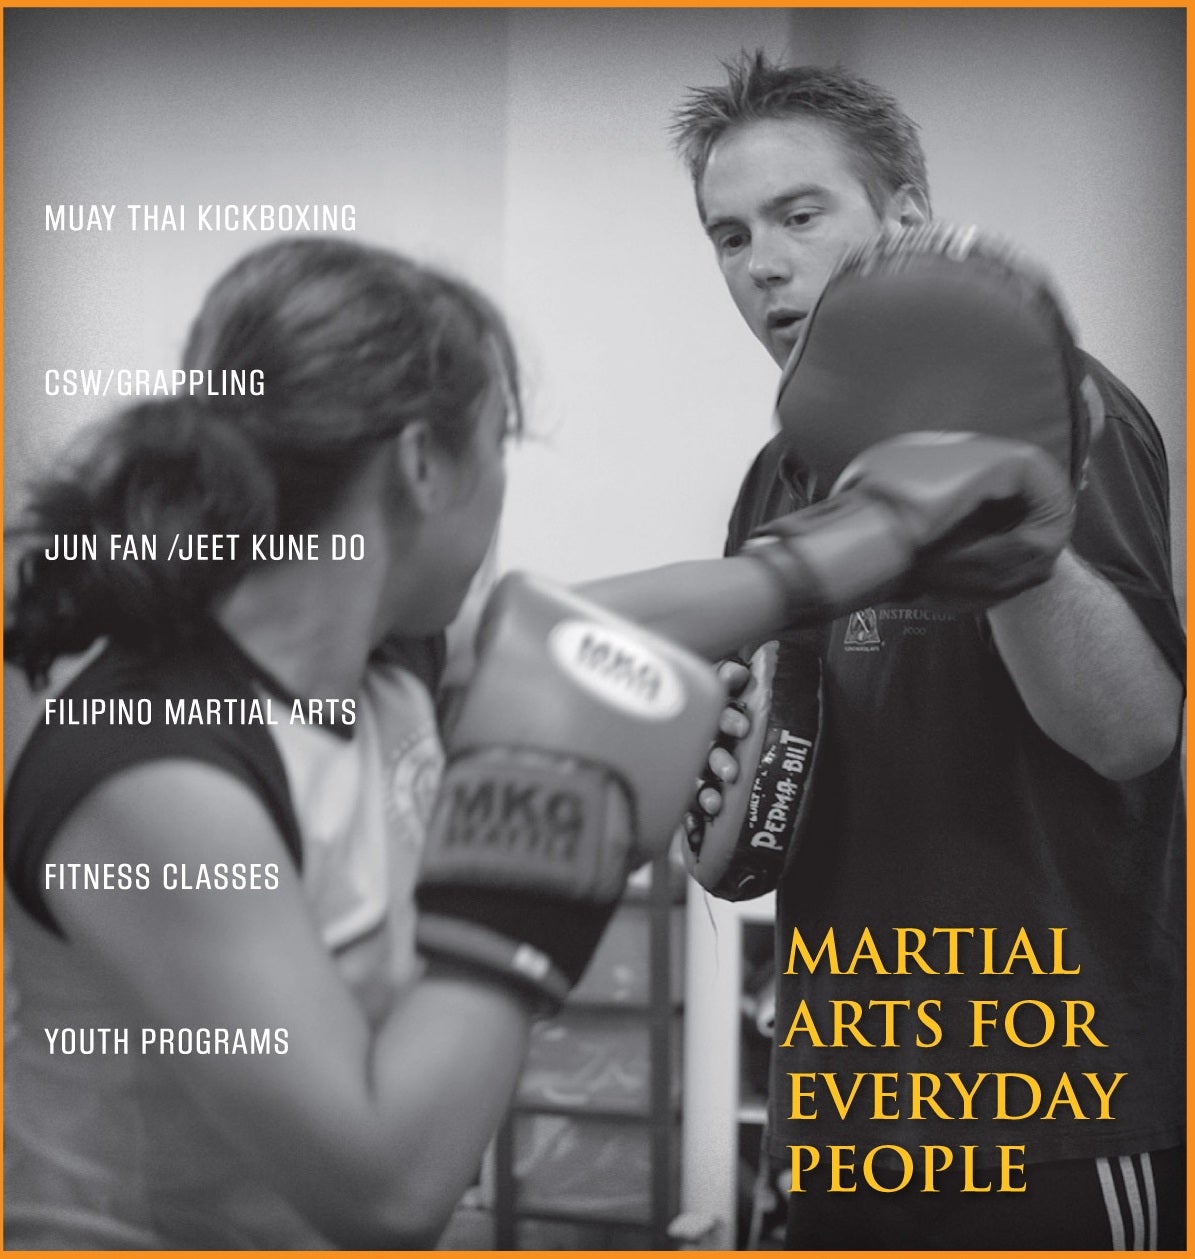 MKG Martial Arts, Kickboxing & Fitness